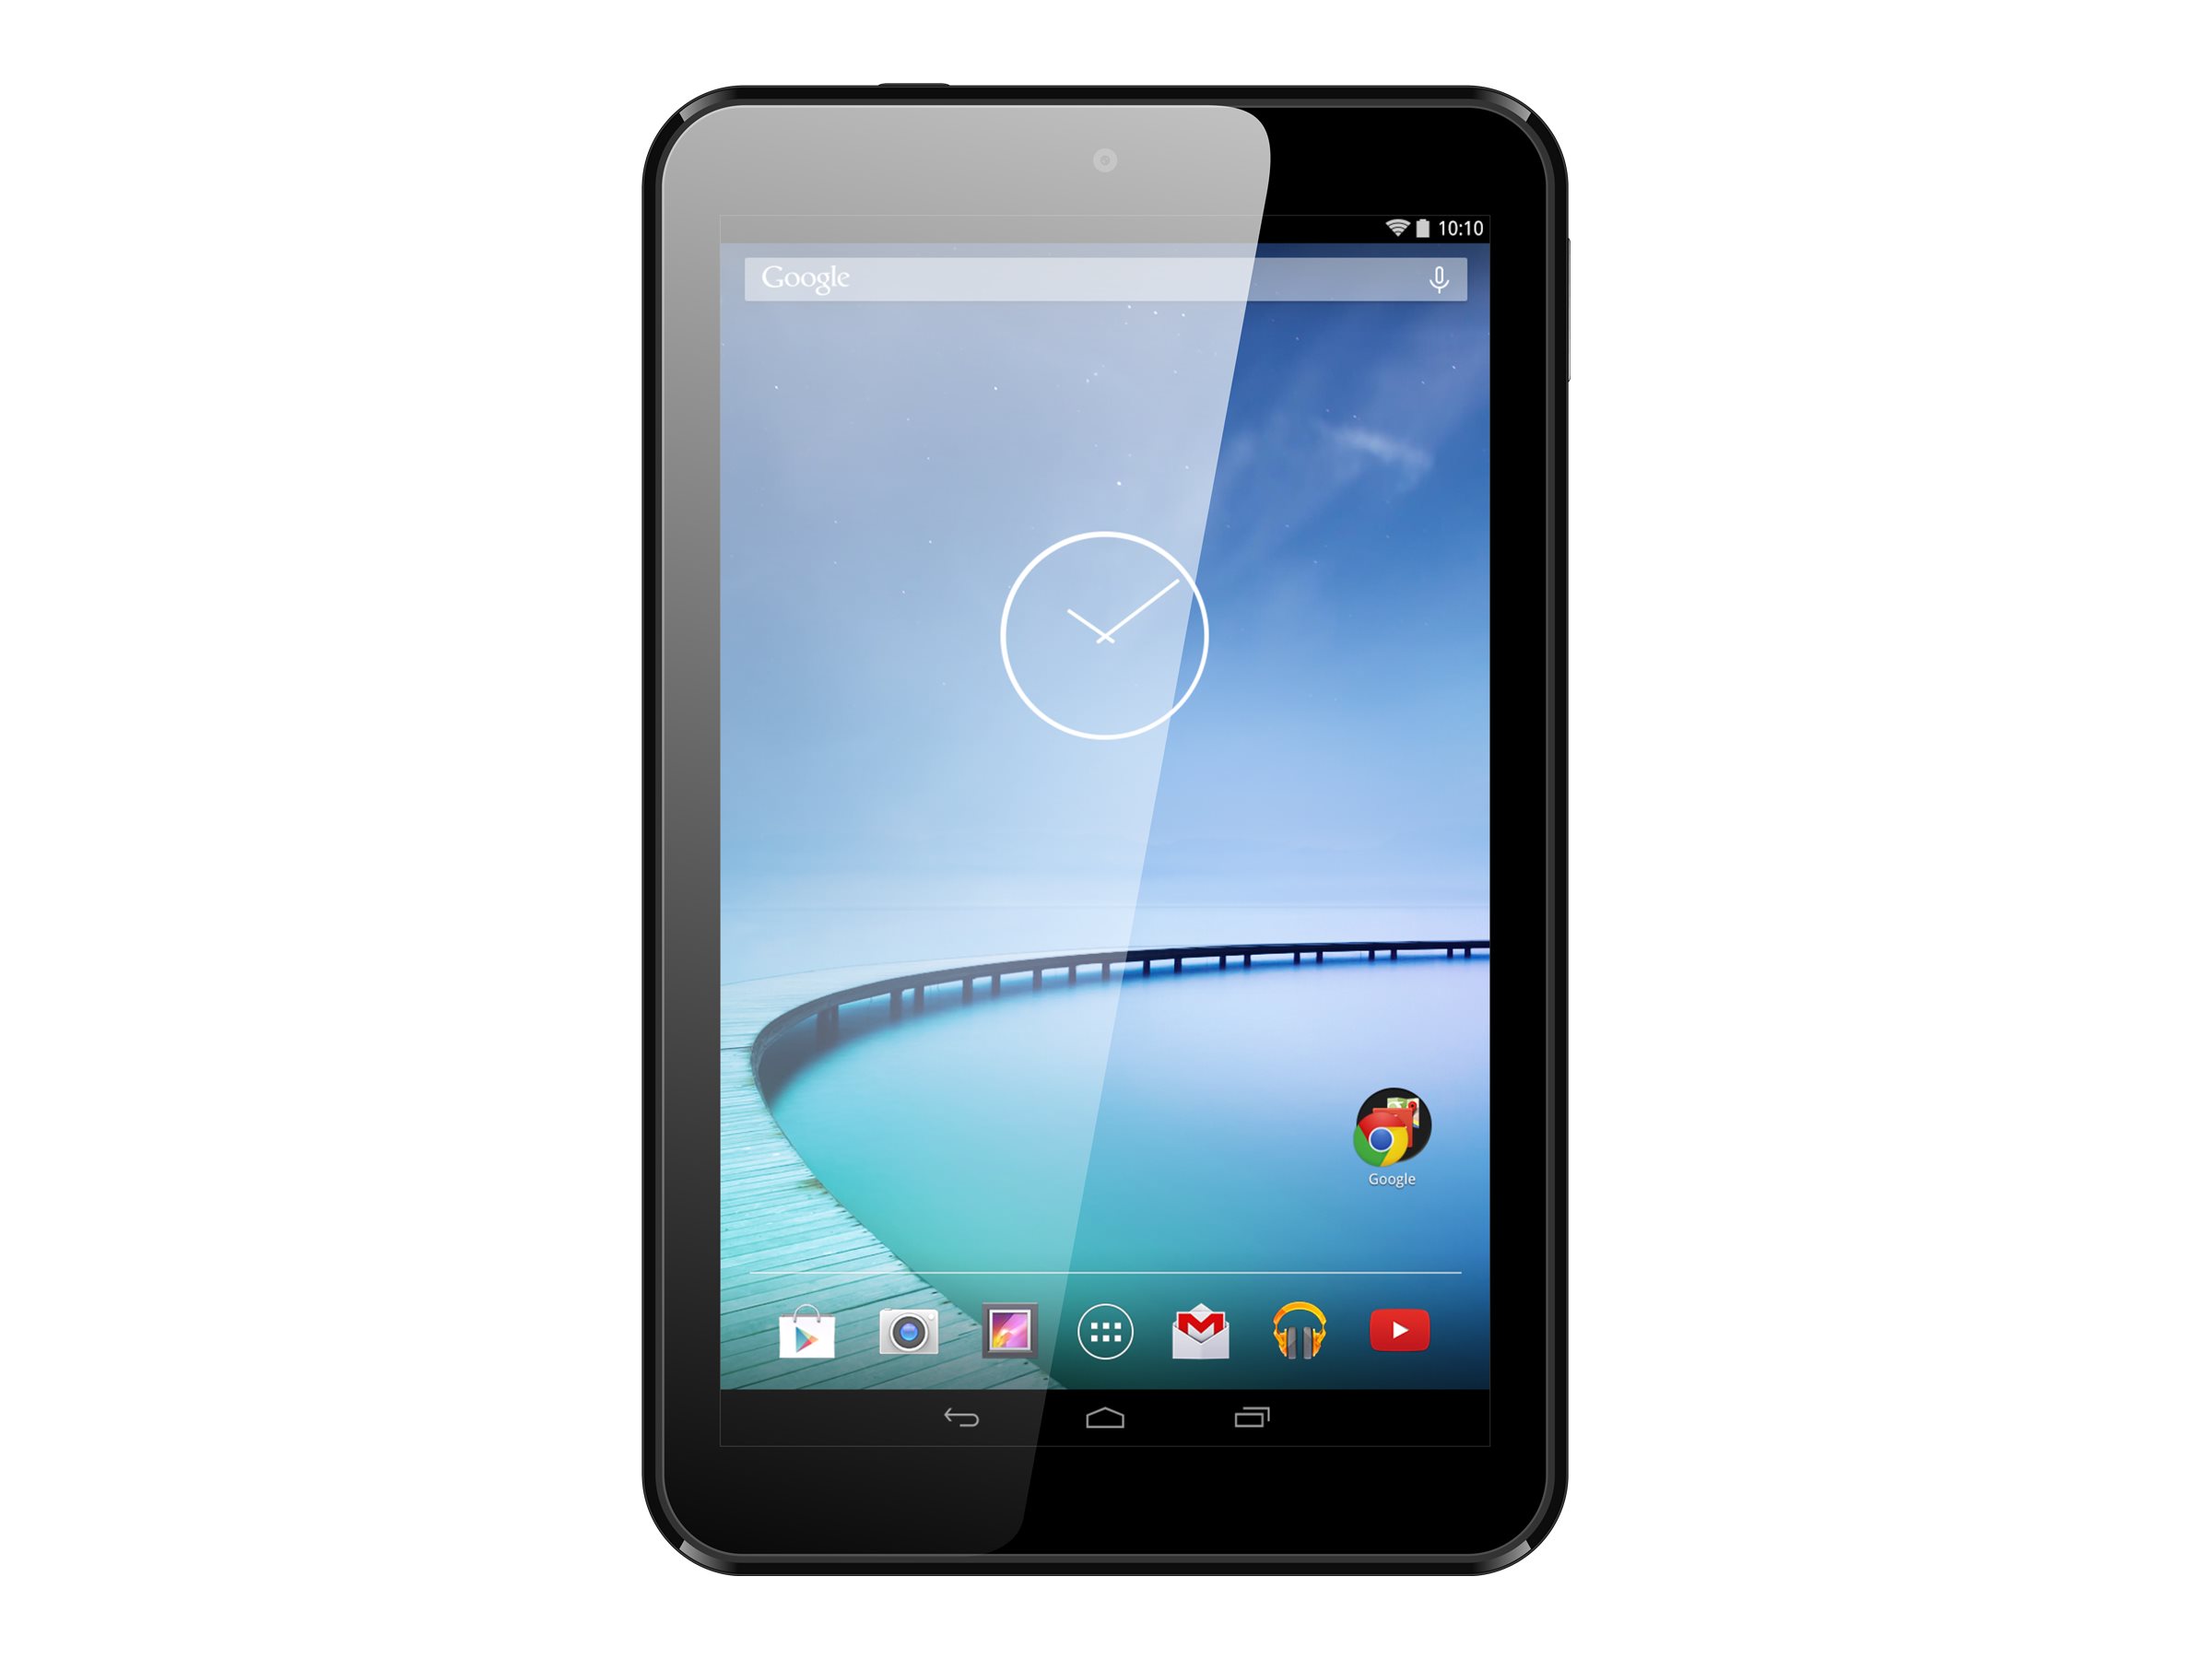 Hisense Sero 8 - Tablet - Android 4.4 (KitKat) - 16 GB - 8" (1280 x 800) - USB host - microSD slot - image 1 of 6